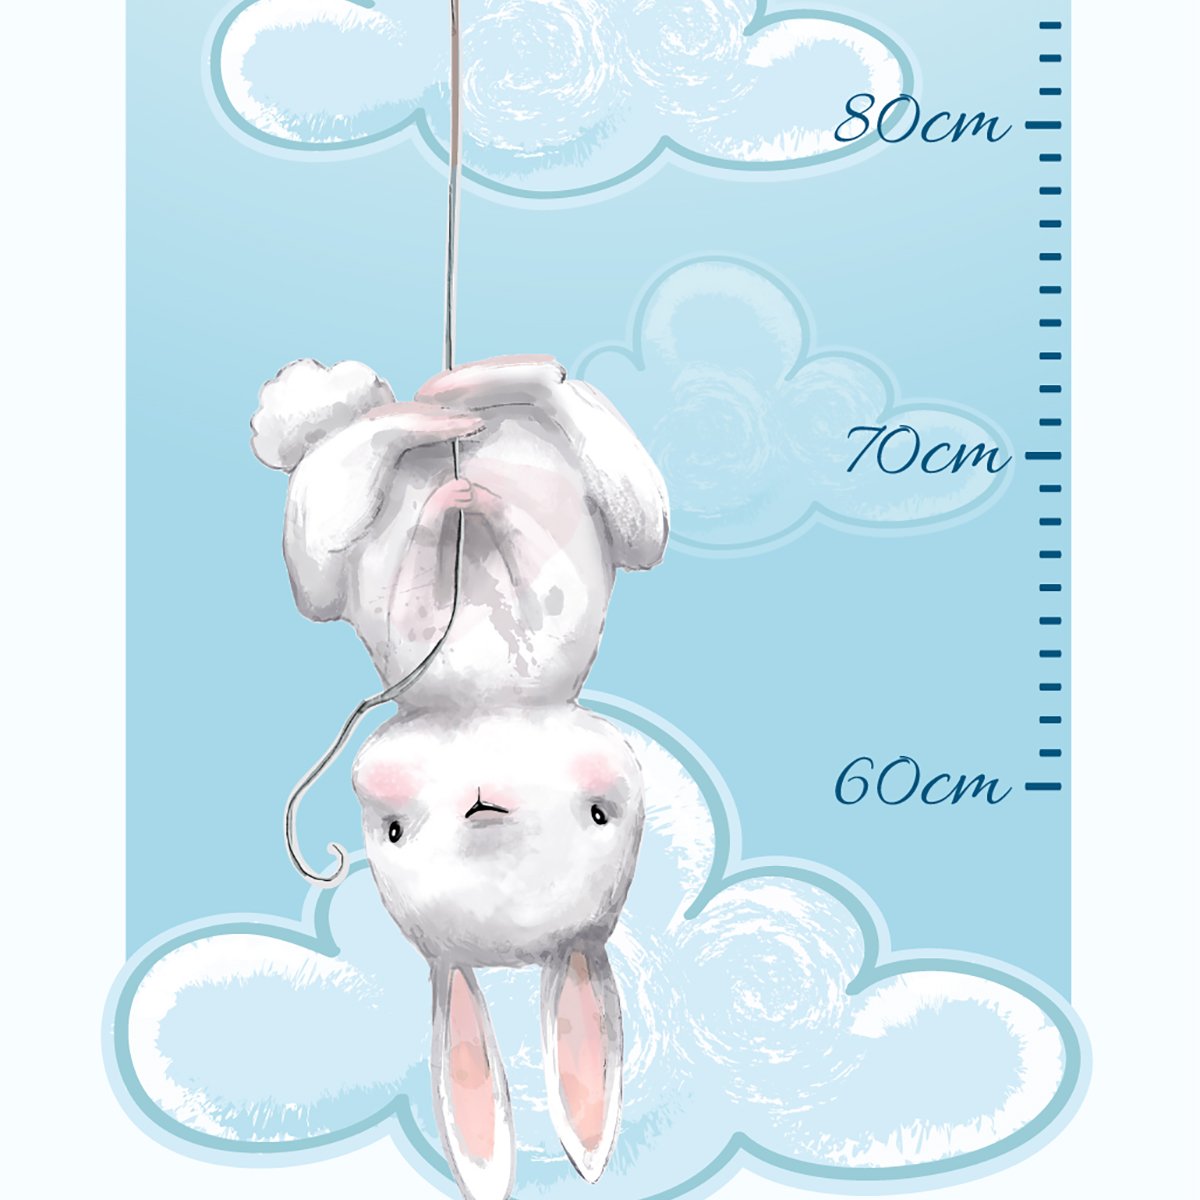 Naklejka dla dzieci miarka wzrostu - króliczki i baloniki#kolor_niebieski